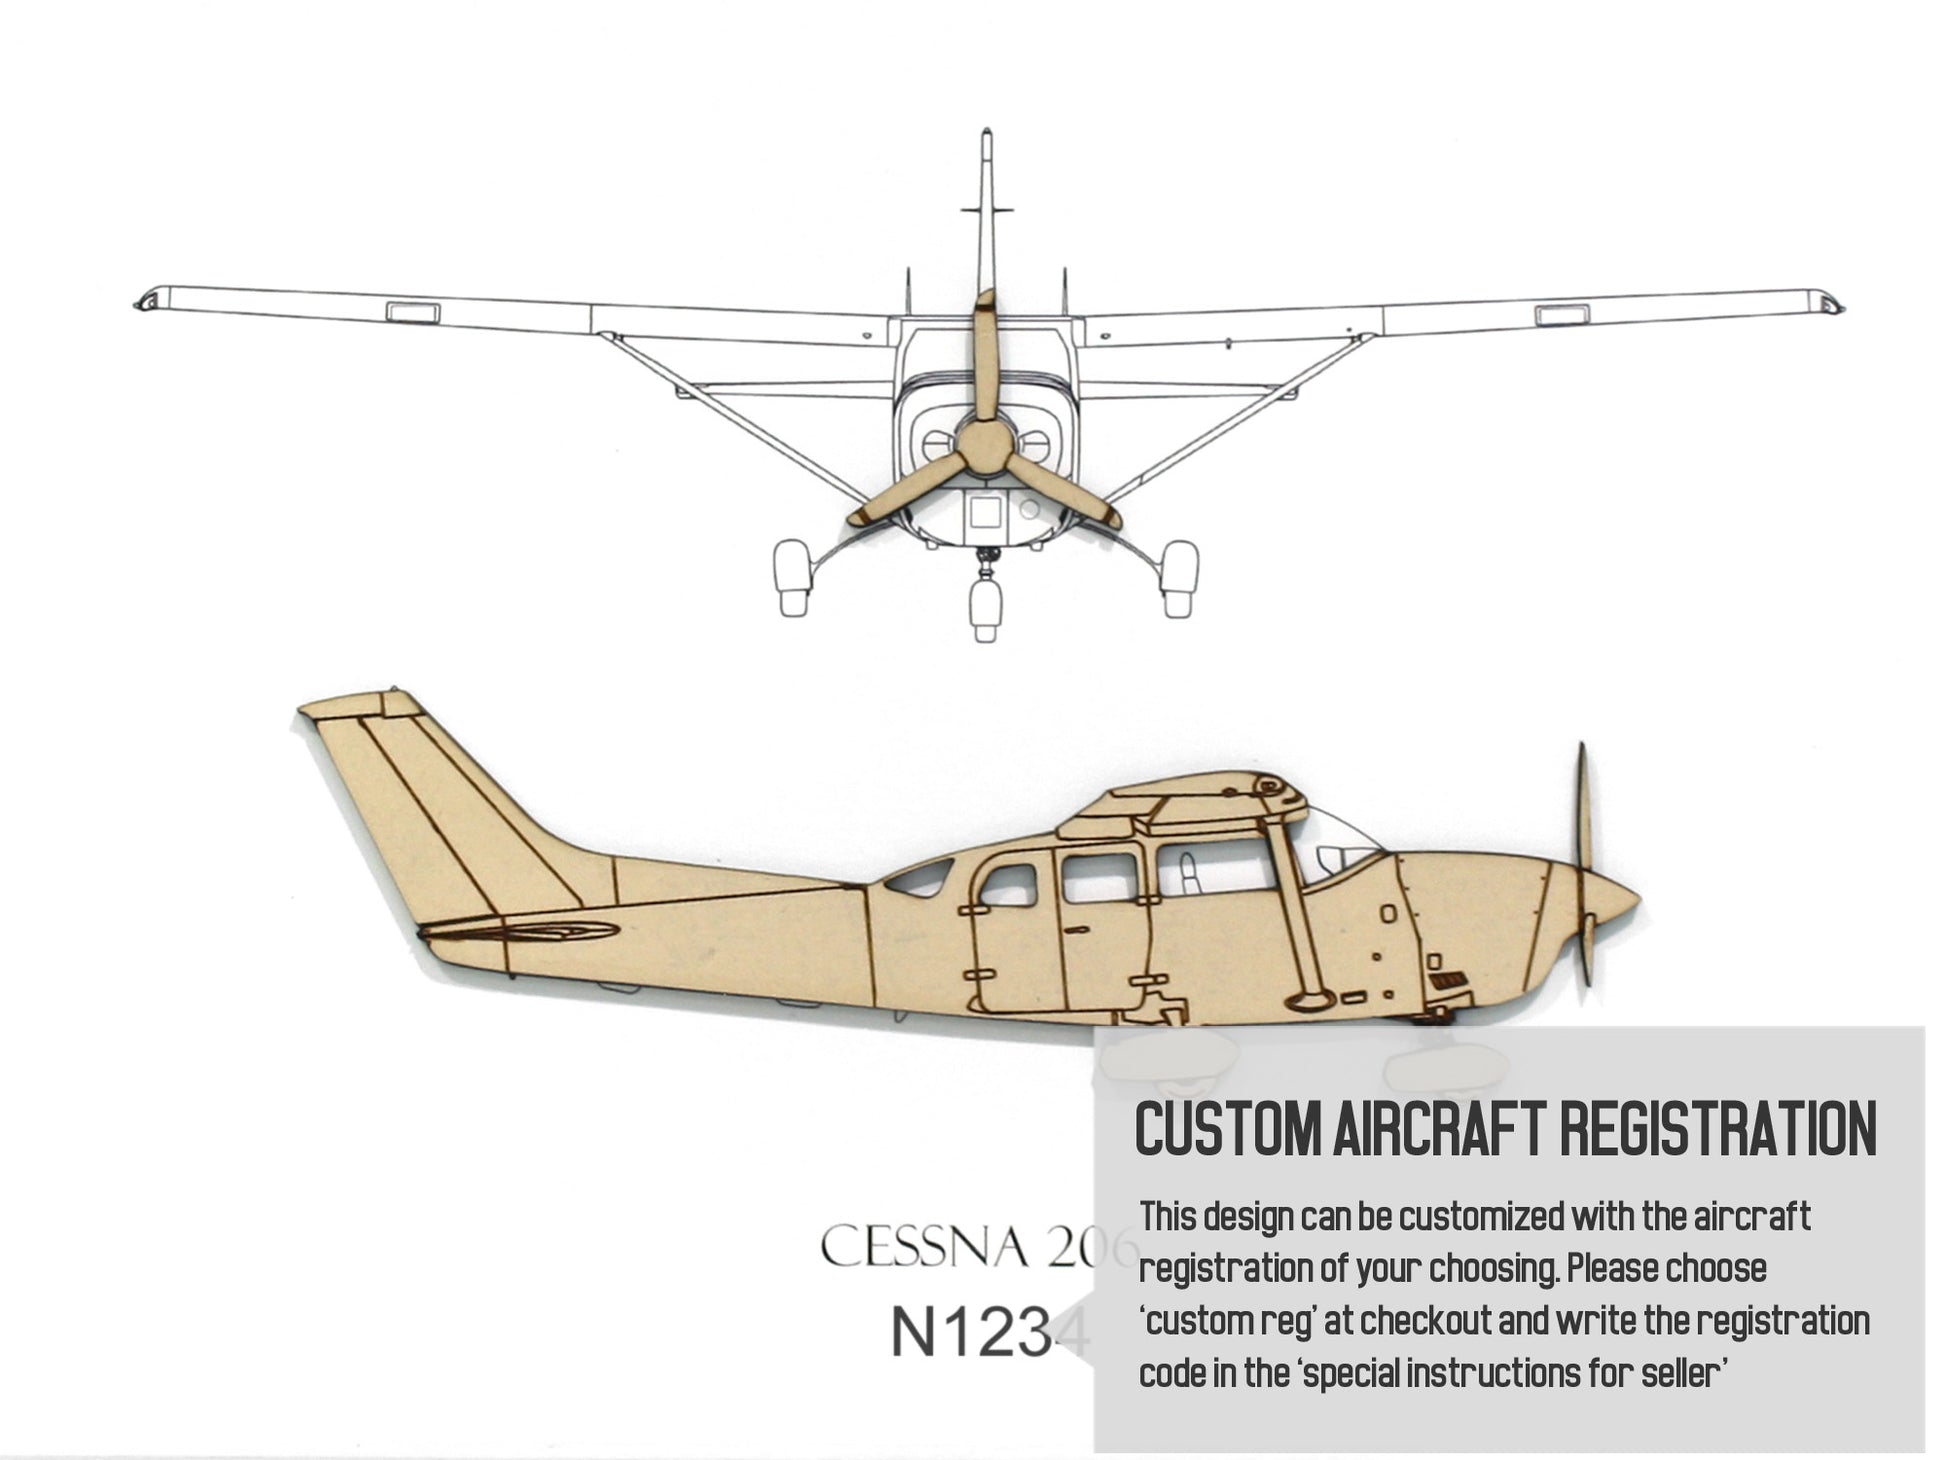 Cessna 206 custom aviation art